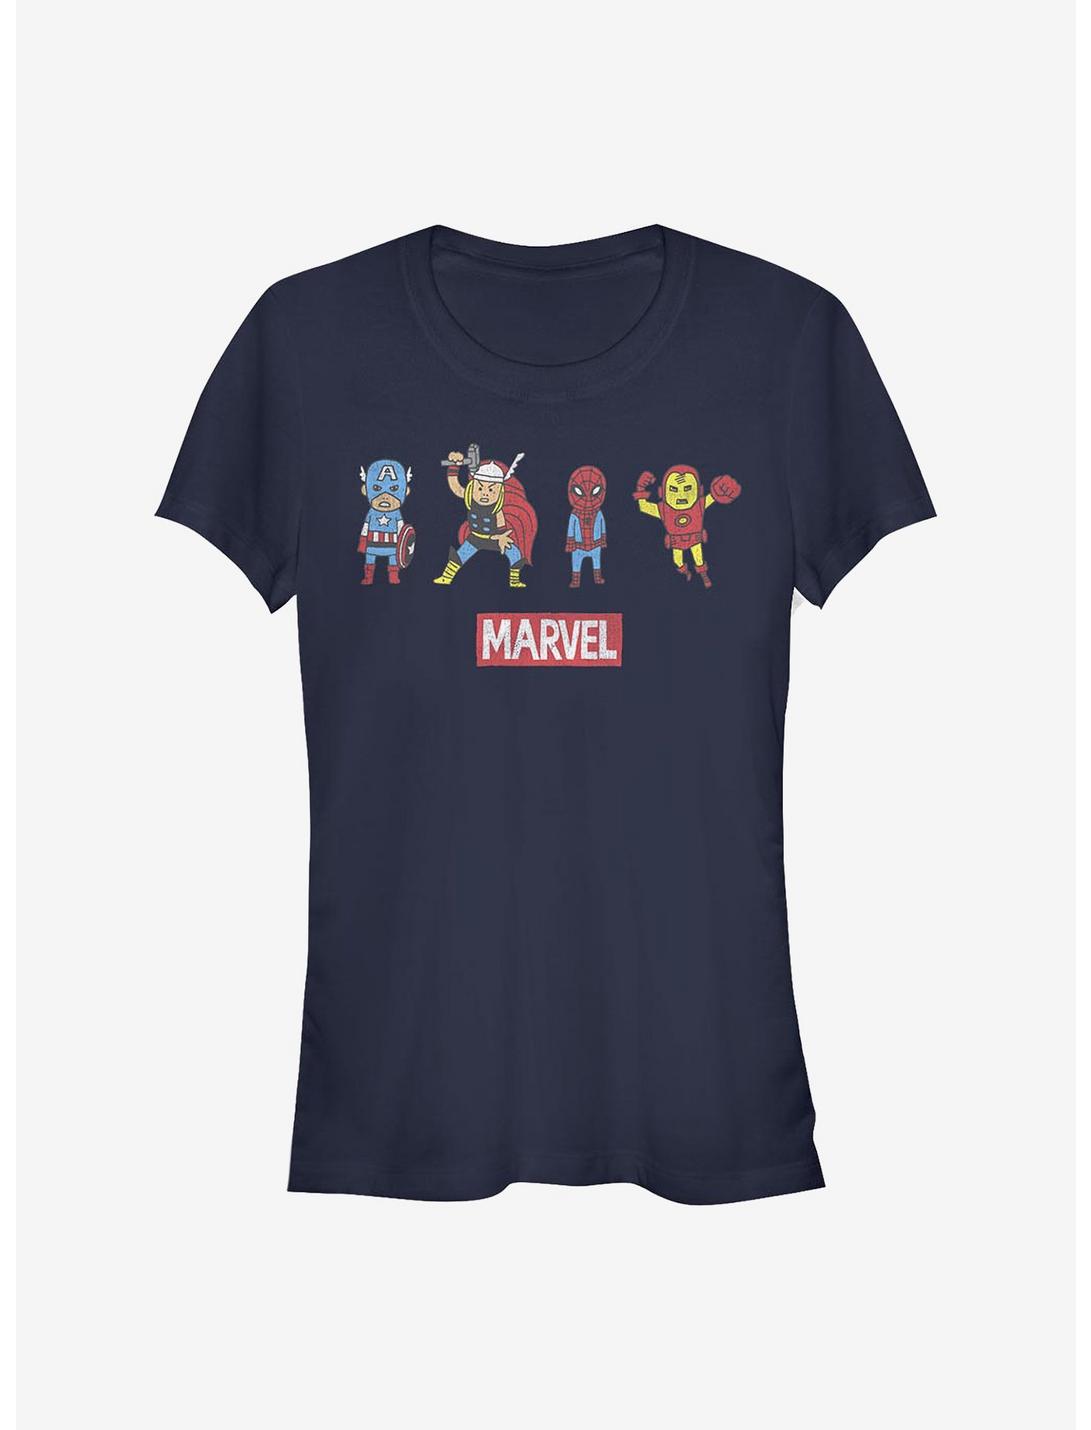 Marvel Avengers Pop Art Group Girls T-Shirt, NAVY, hi-res